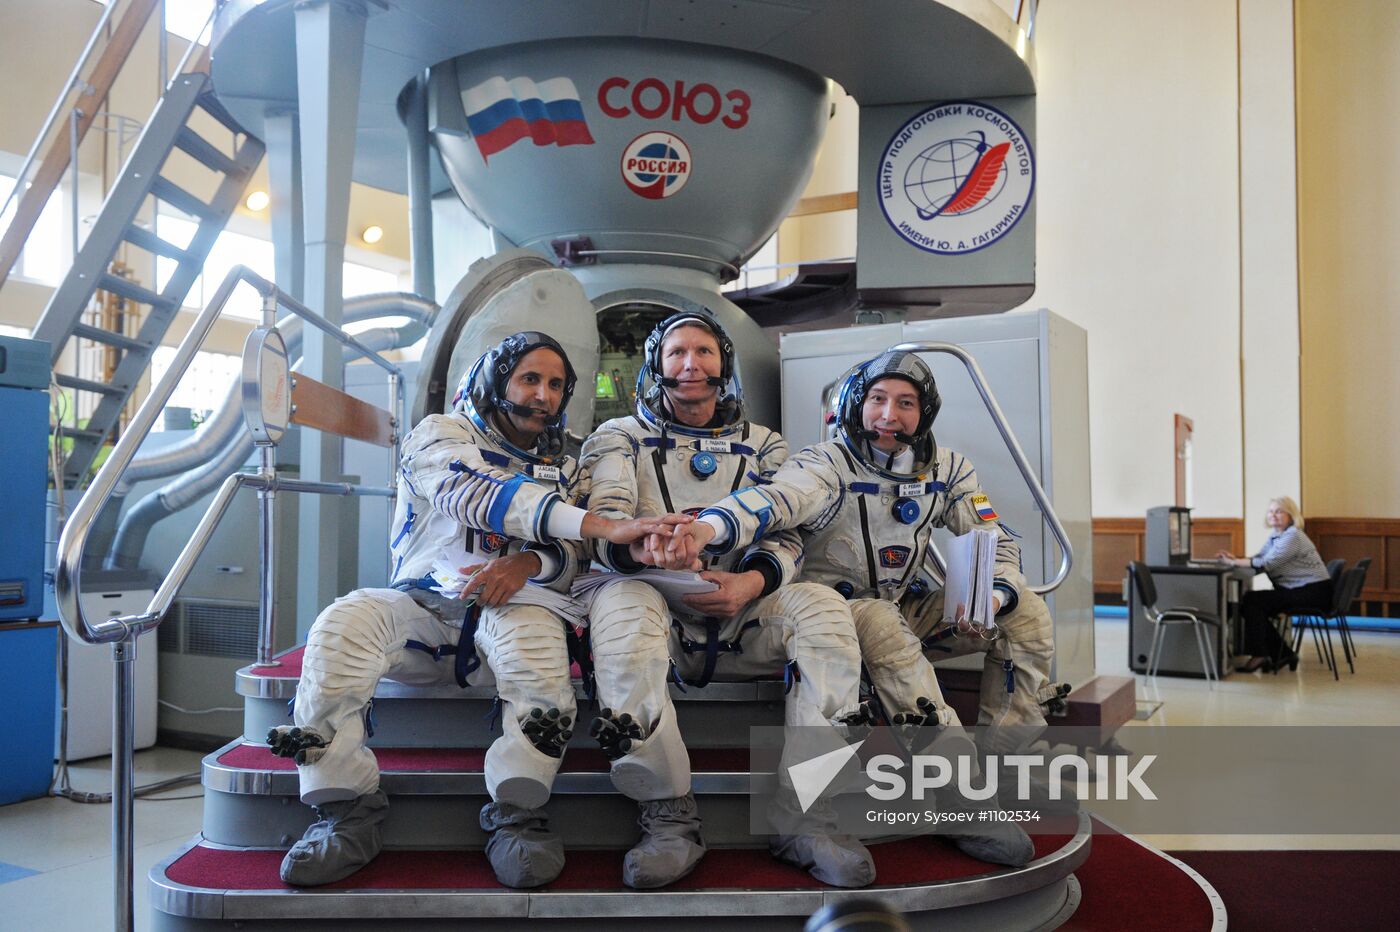 ISS 31/32 prime crew practice on Soyuz TMA-M simulator